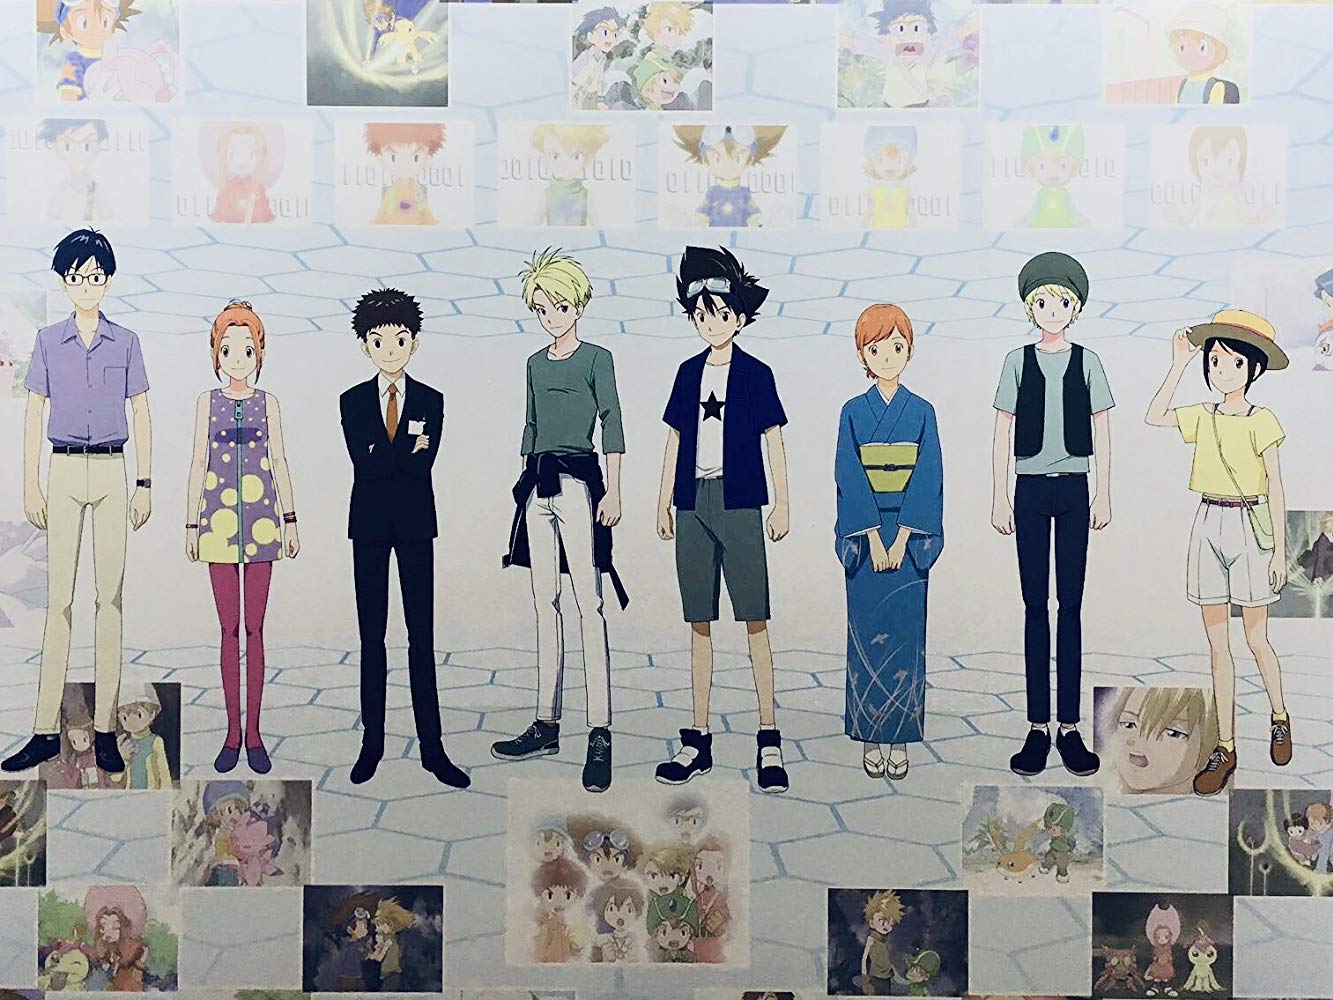 La nueva película de Digimon 2020 presenta a los niños elegidos originales con más de 20 años (Foto: Toei Animation)